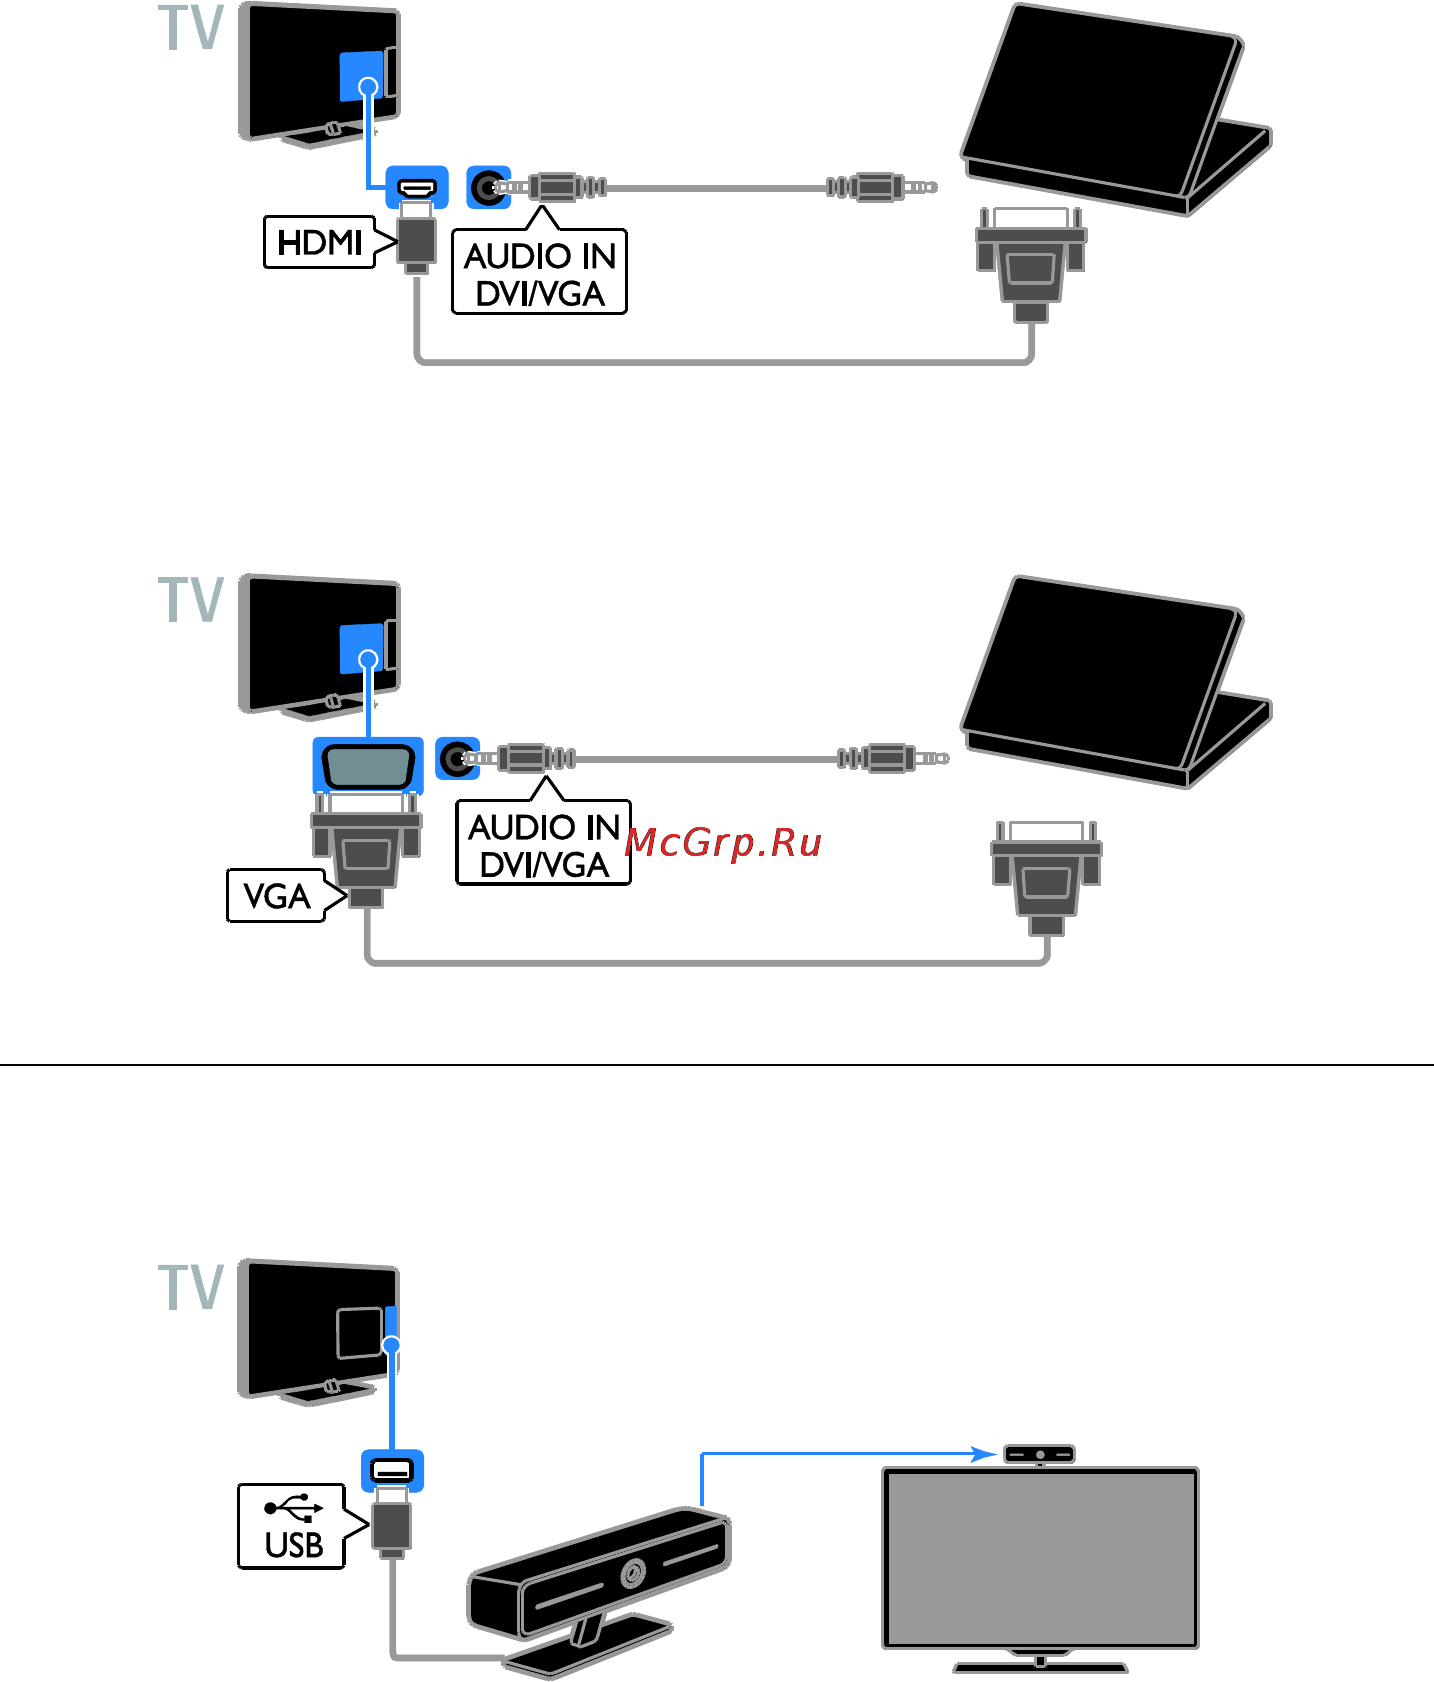 Как подключить ноутбук к телевизору через кабель тарифкин.ру
как подключить ноутбук к телевизору через кабель